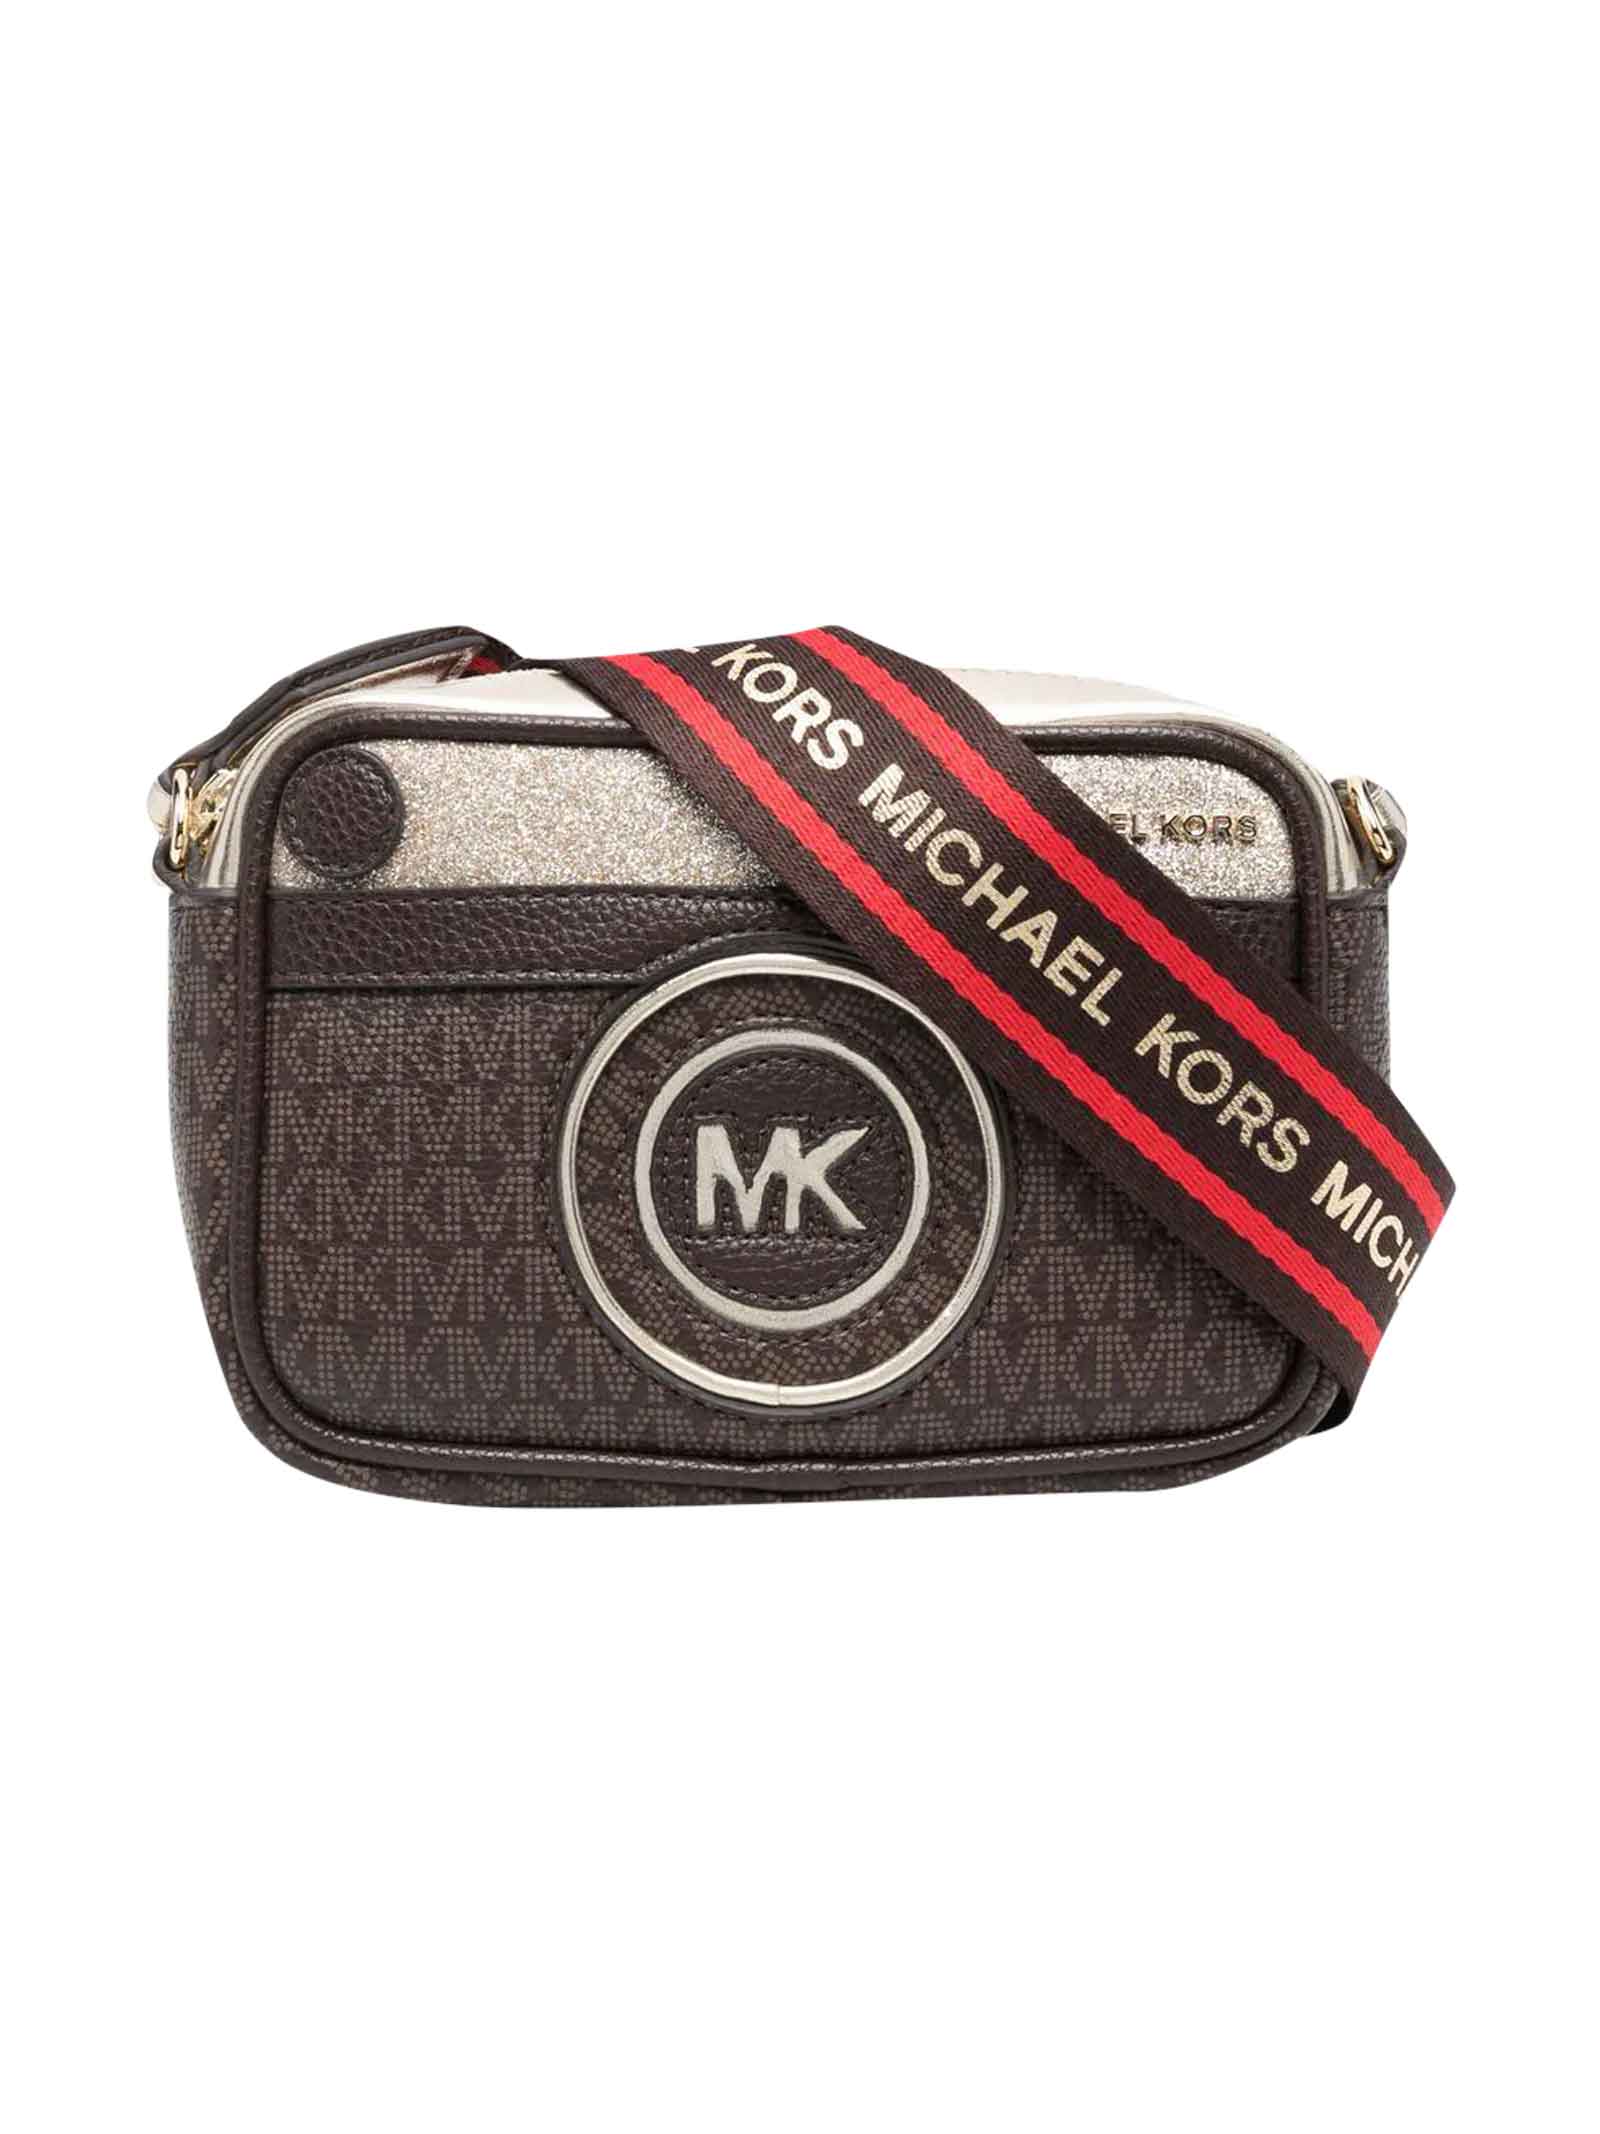 Michael Kors Brown Bag Girl